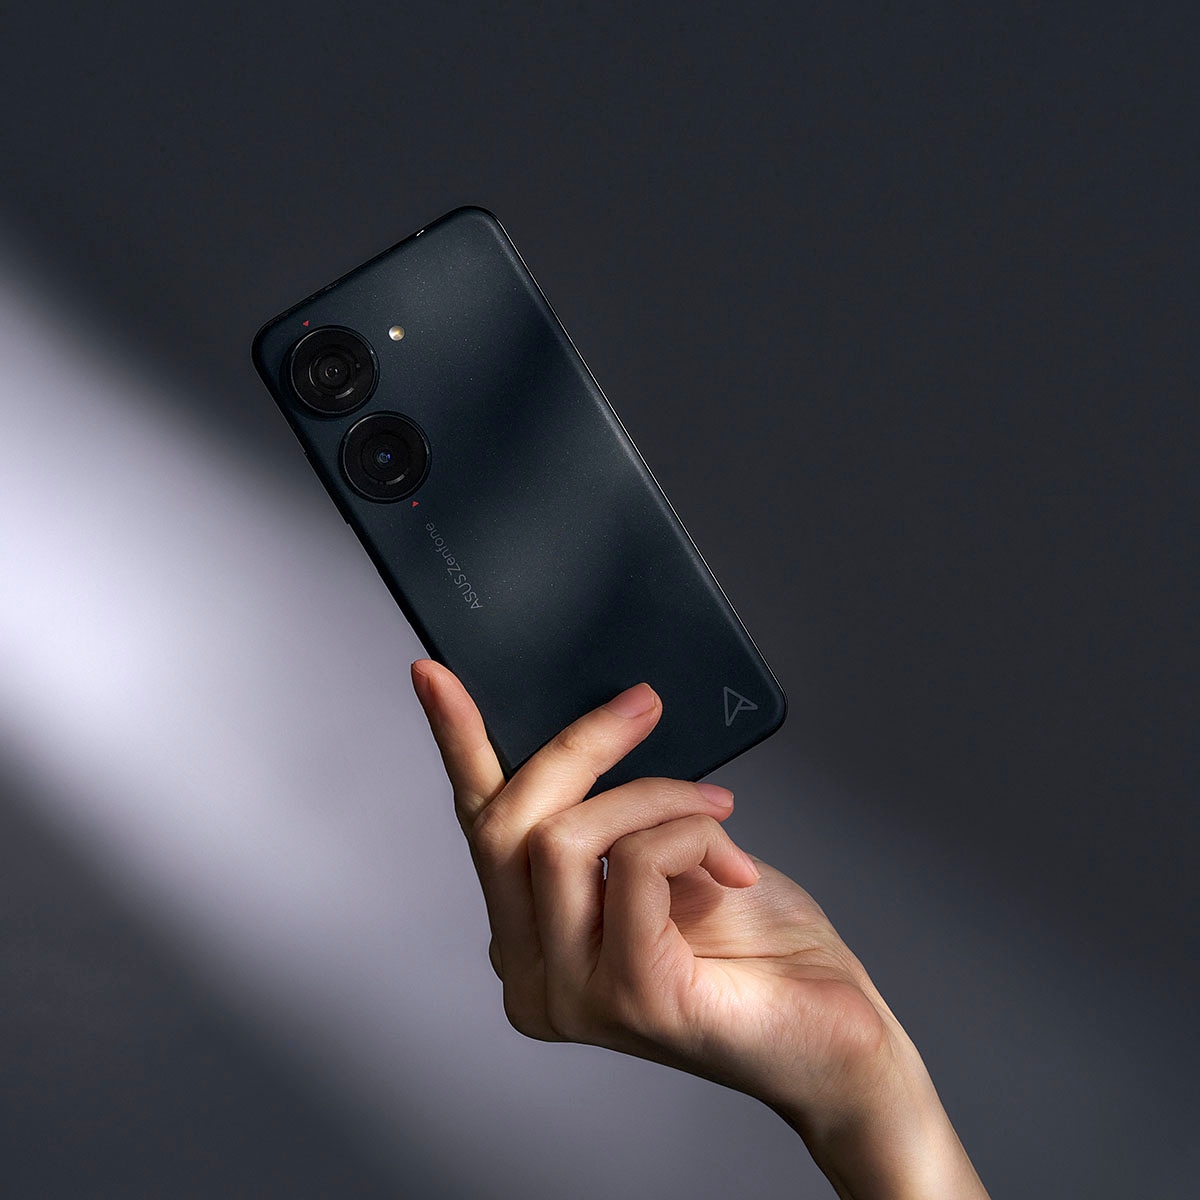 Asus Smartphone »ZENFONE 10«, schwarz, 14,98 cm/5,9 Zoll, 512 GB Speicherplatz, 50 MP Kamera